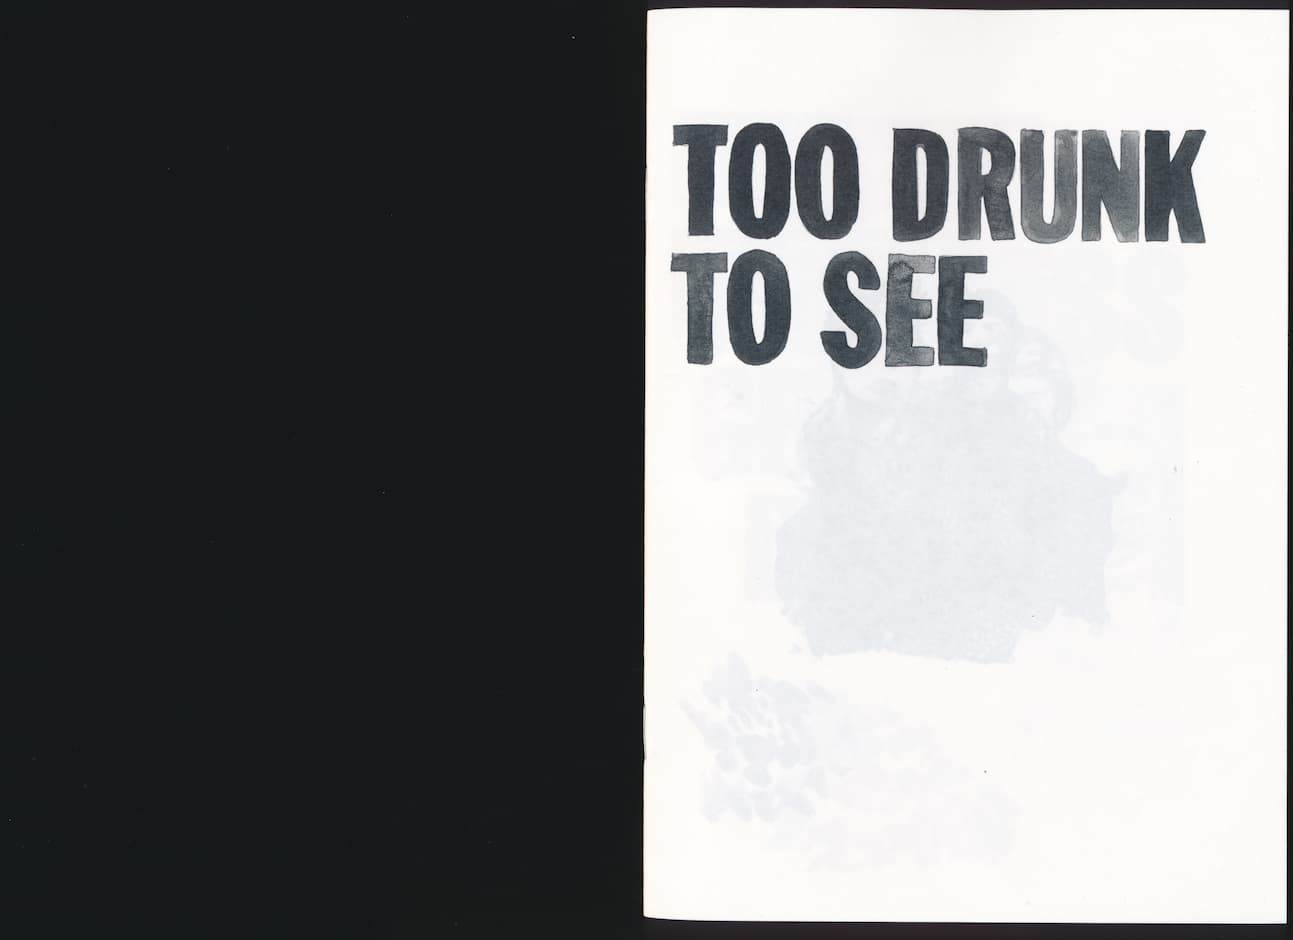 Dominique Hurth, Too drunk to see, 2018. Livre d'artiste, impression Xerox sur papier Munken. 32 pages, format A5 20,7 x 14,7 cm. 44/100. Achat à l'artiste. Collection Frac Normandie Rouen. © Droits réservés.